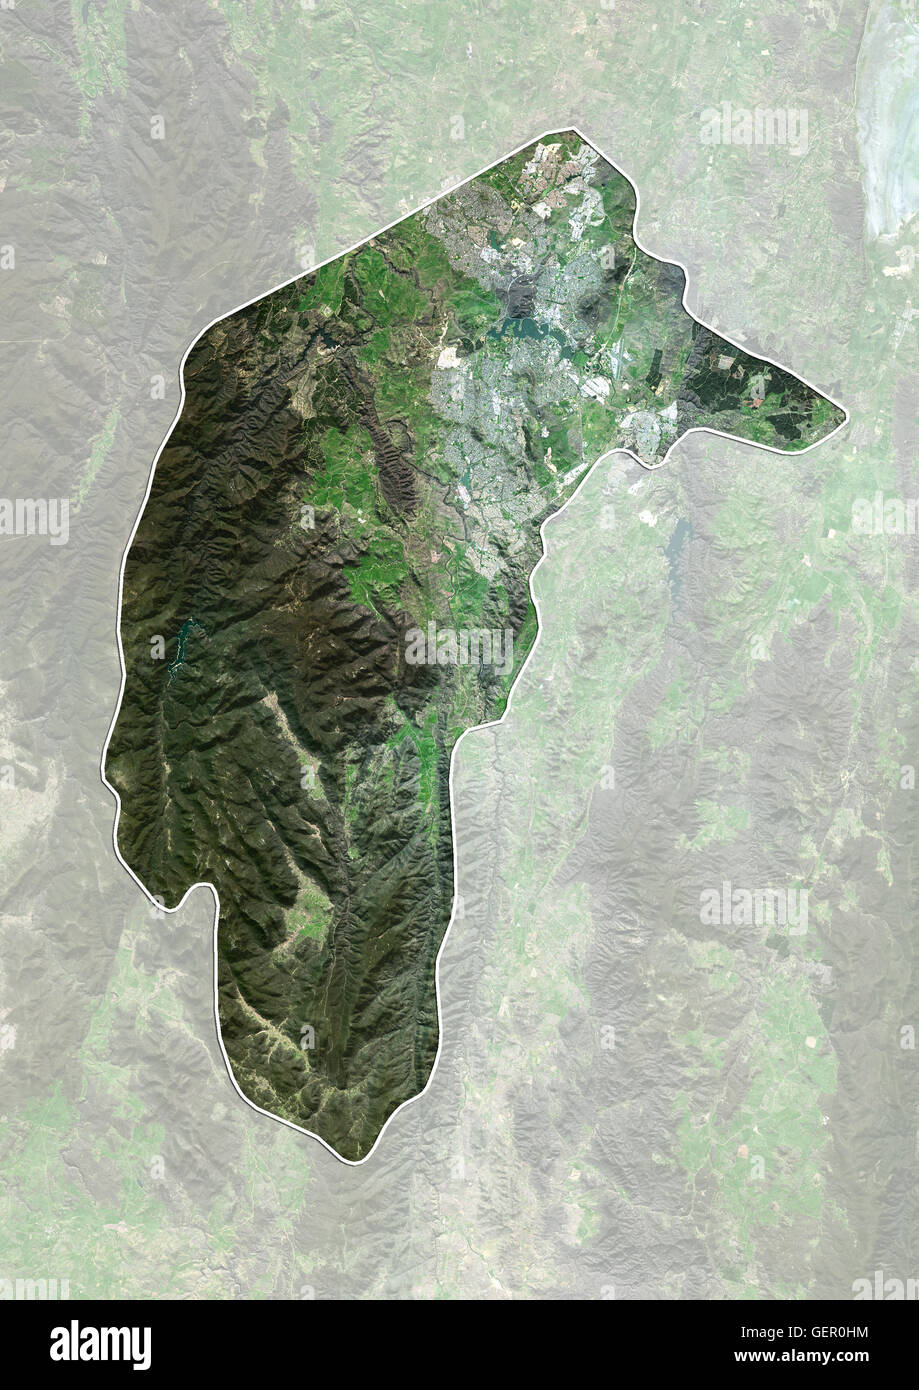 Vista satellitare di Canberra e il Territorio della Capitale Australiana, Australia (con i confini amministrativi e maschera). Canberra è la capitale dell'Australia. Questa immagine è stata elaborata sulla base dei dati acquisiti dal satellite Landsat 8 satellite in 2014. Foto Stock